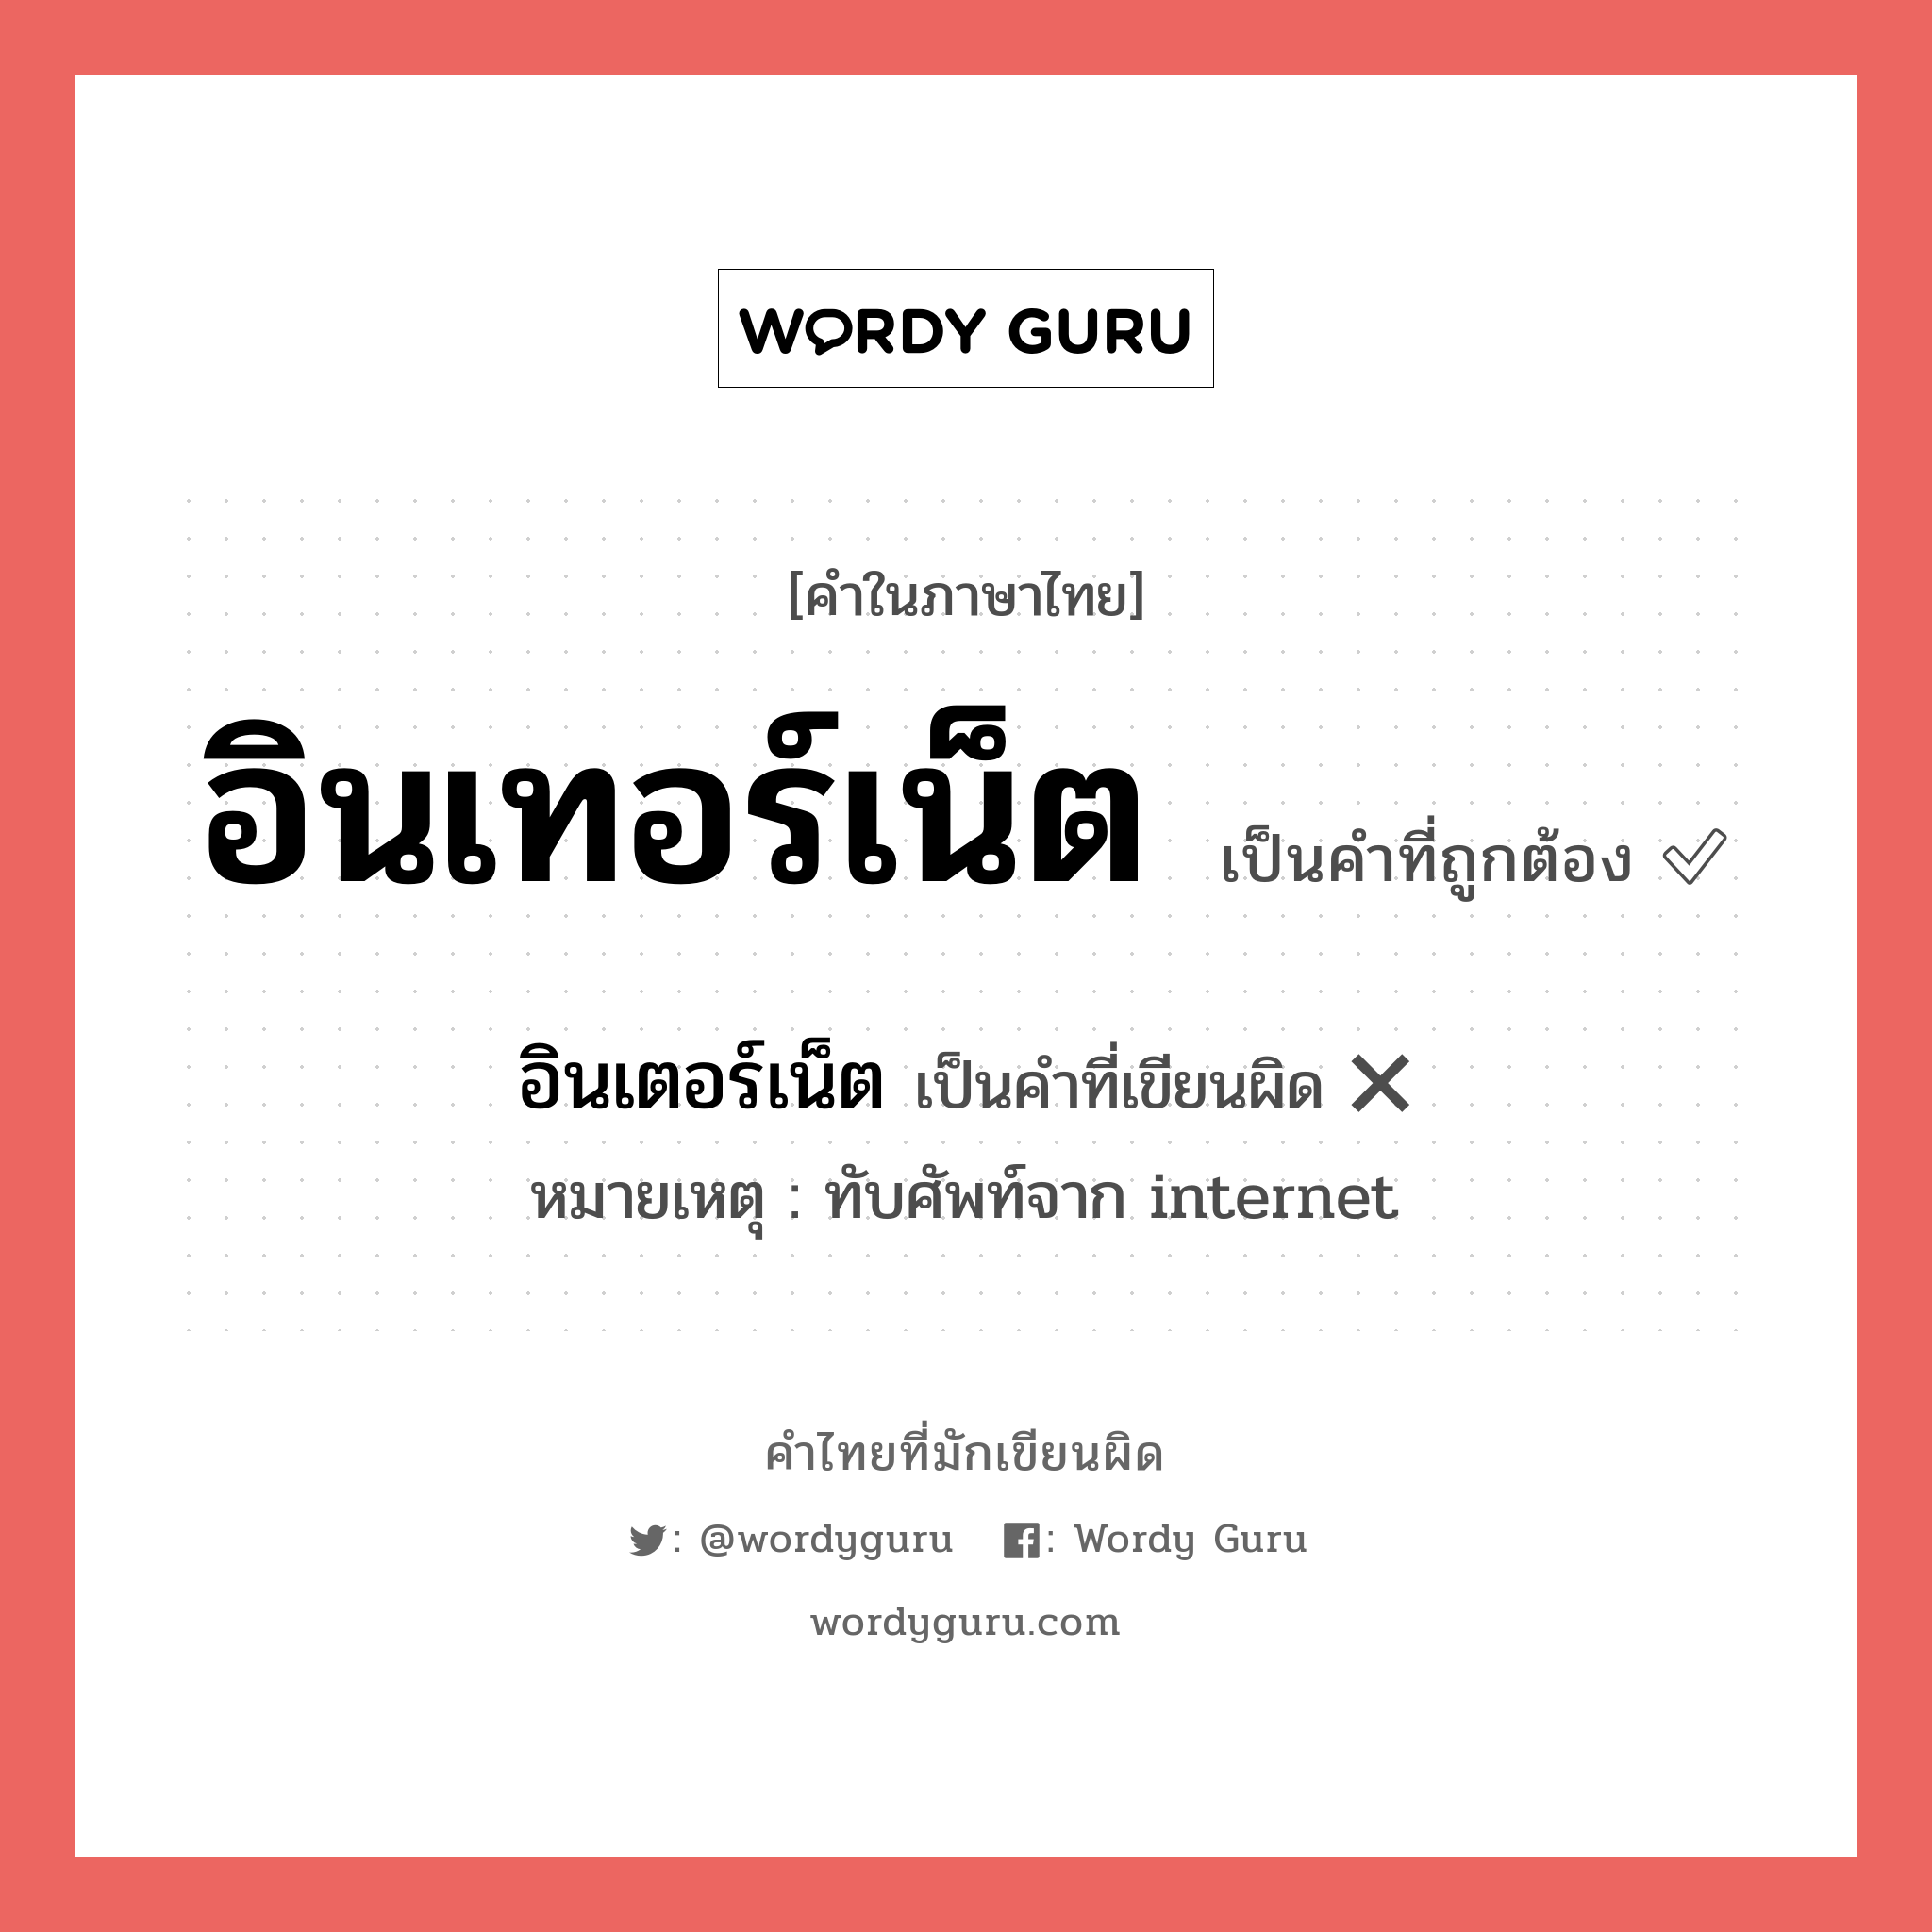 อินเทอร์เน็ต หรือ อินเตอร์เน็ต เขียนยังไง? คำไหนเขียนถูก?, คำในภาษาไทยที่มักเขียนผิด อินเทอร์เน็ต คำที่ผิด ❌ อินเตอร์เน็ต หมายเหตุ ทับศัพท์จาก internet